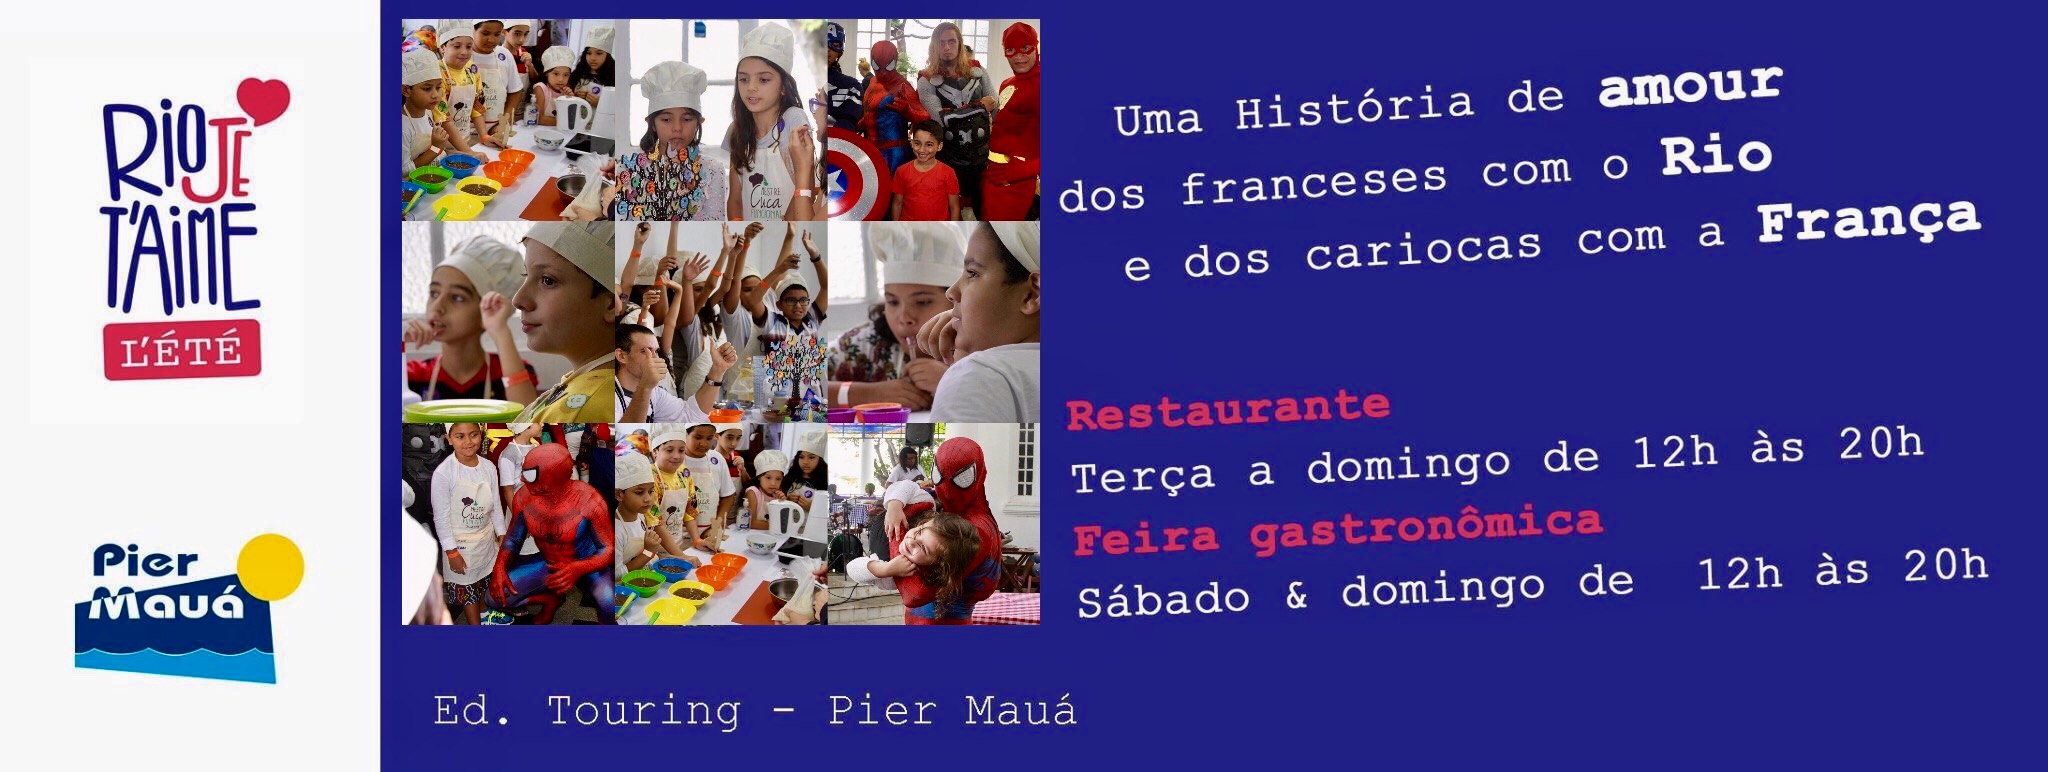 Mestre Cuca Kid's Rio Je T'aime edição Carnaval